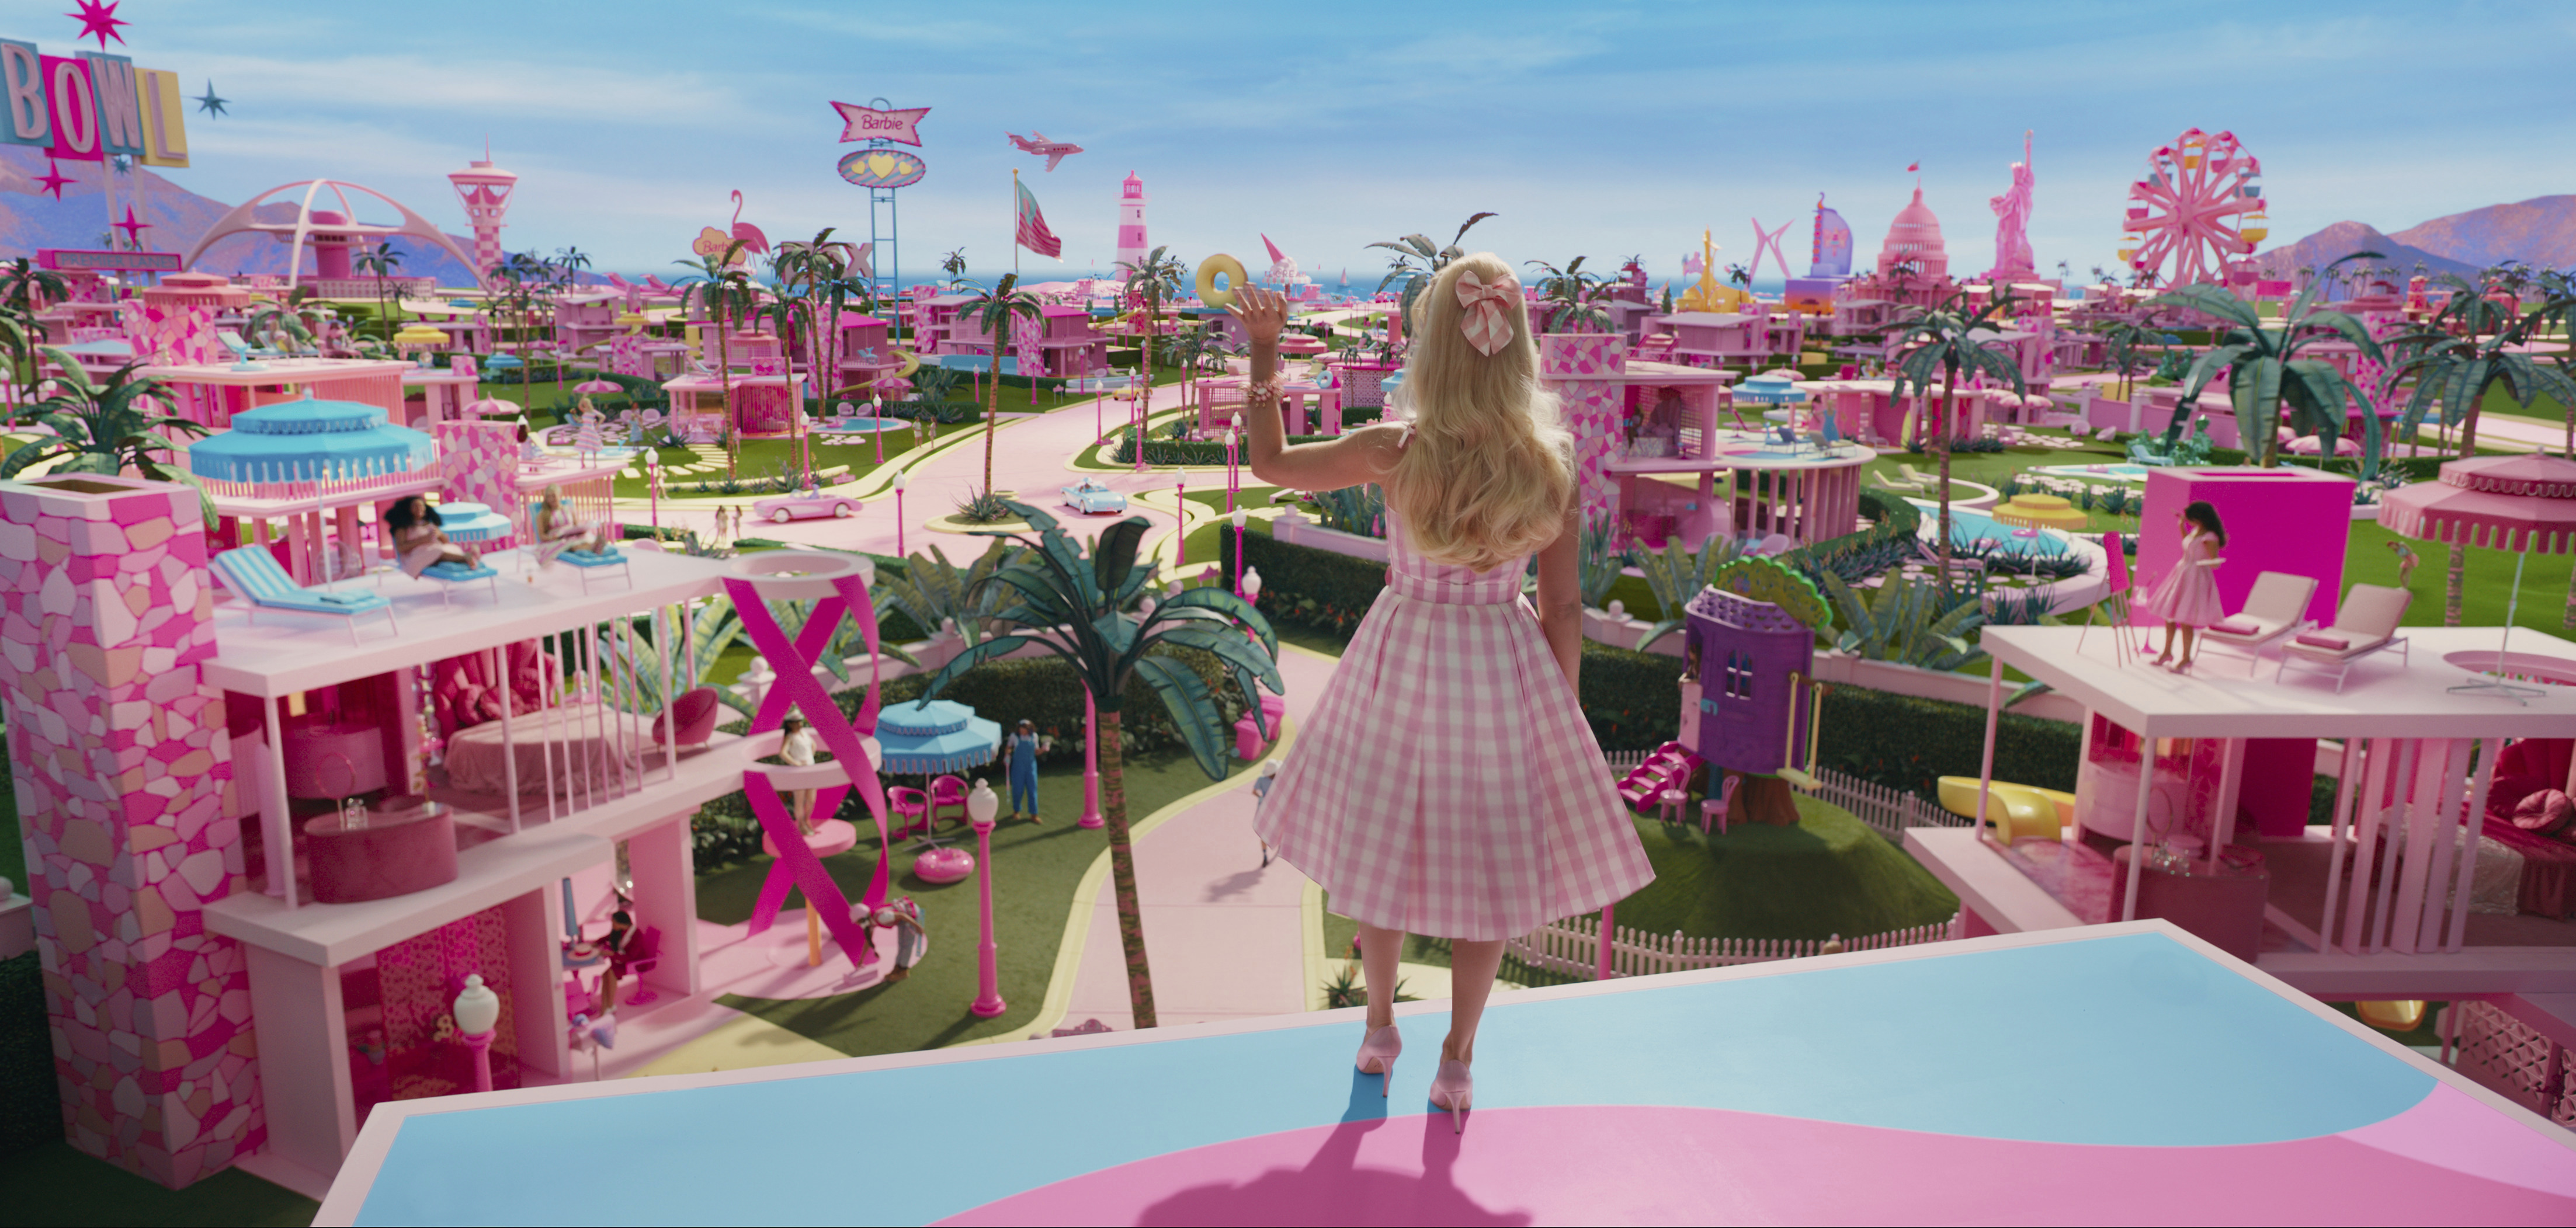 Cuándo se estrena Barbie en México 2023? Fecha de estreno oficial